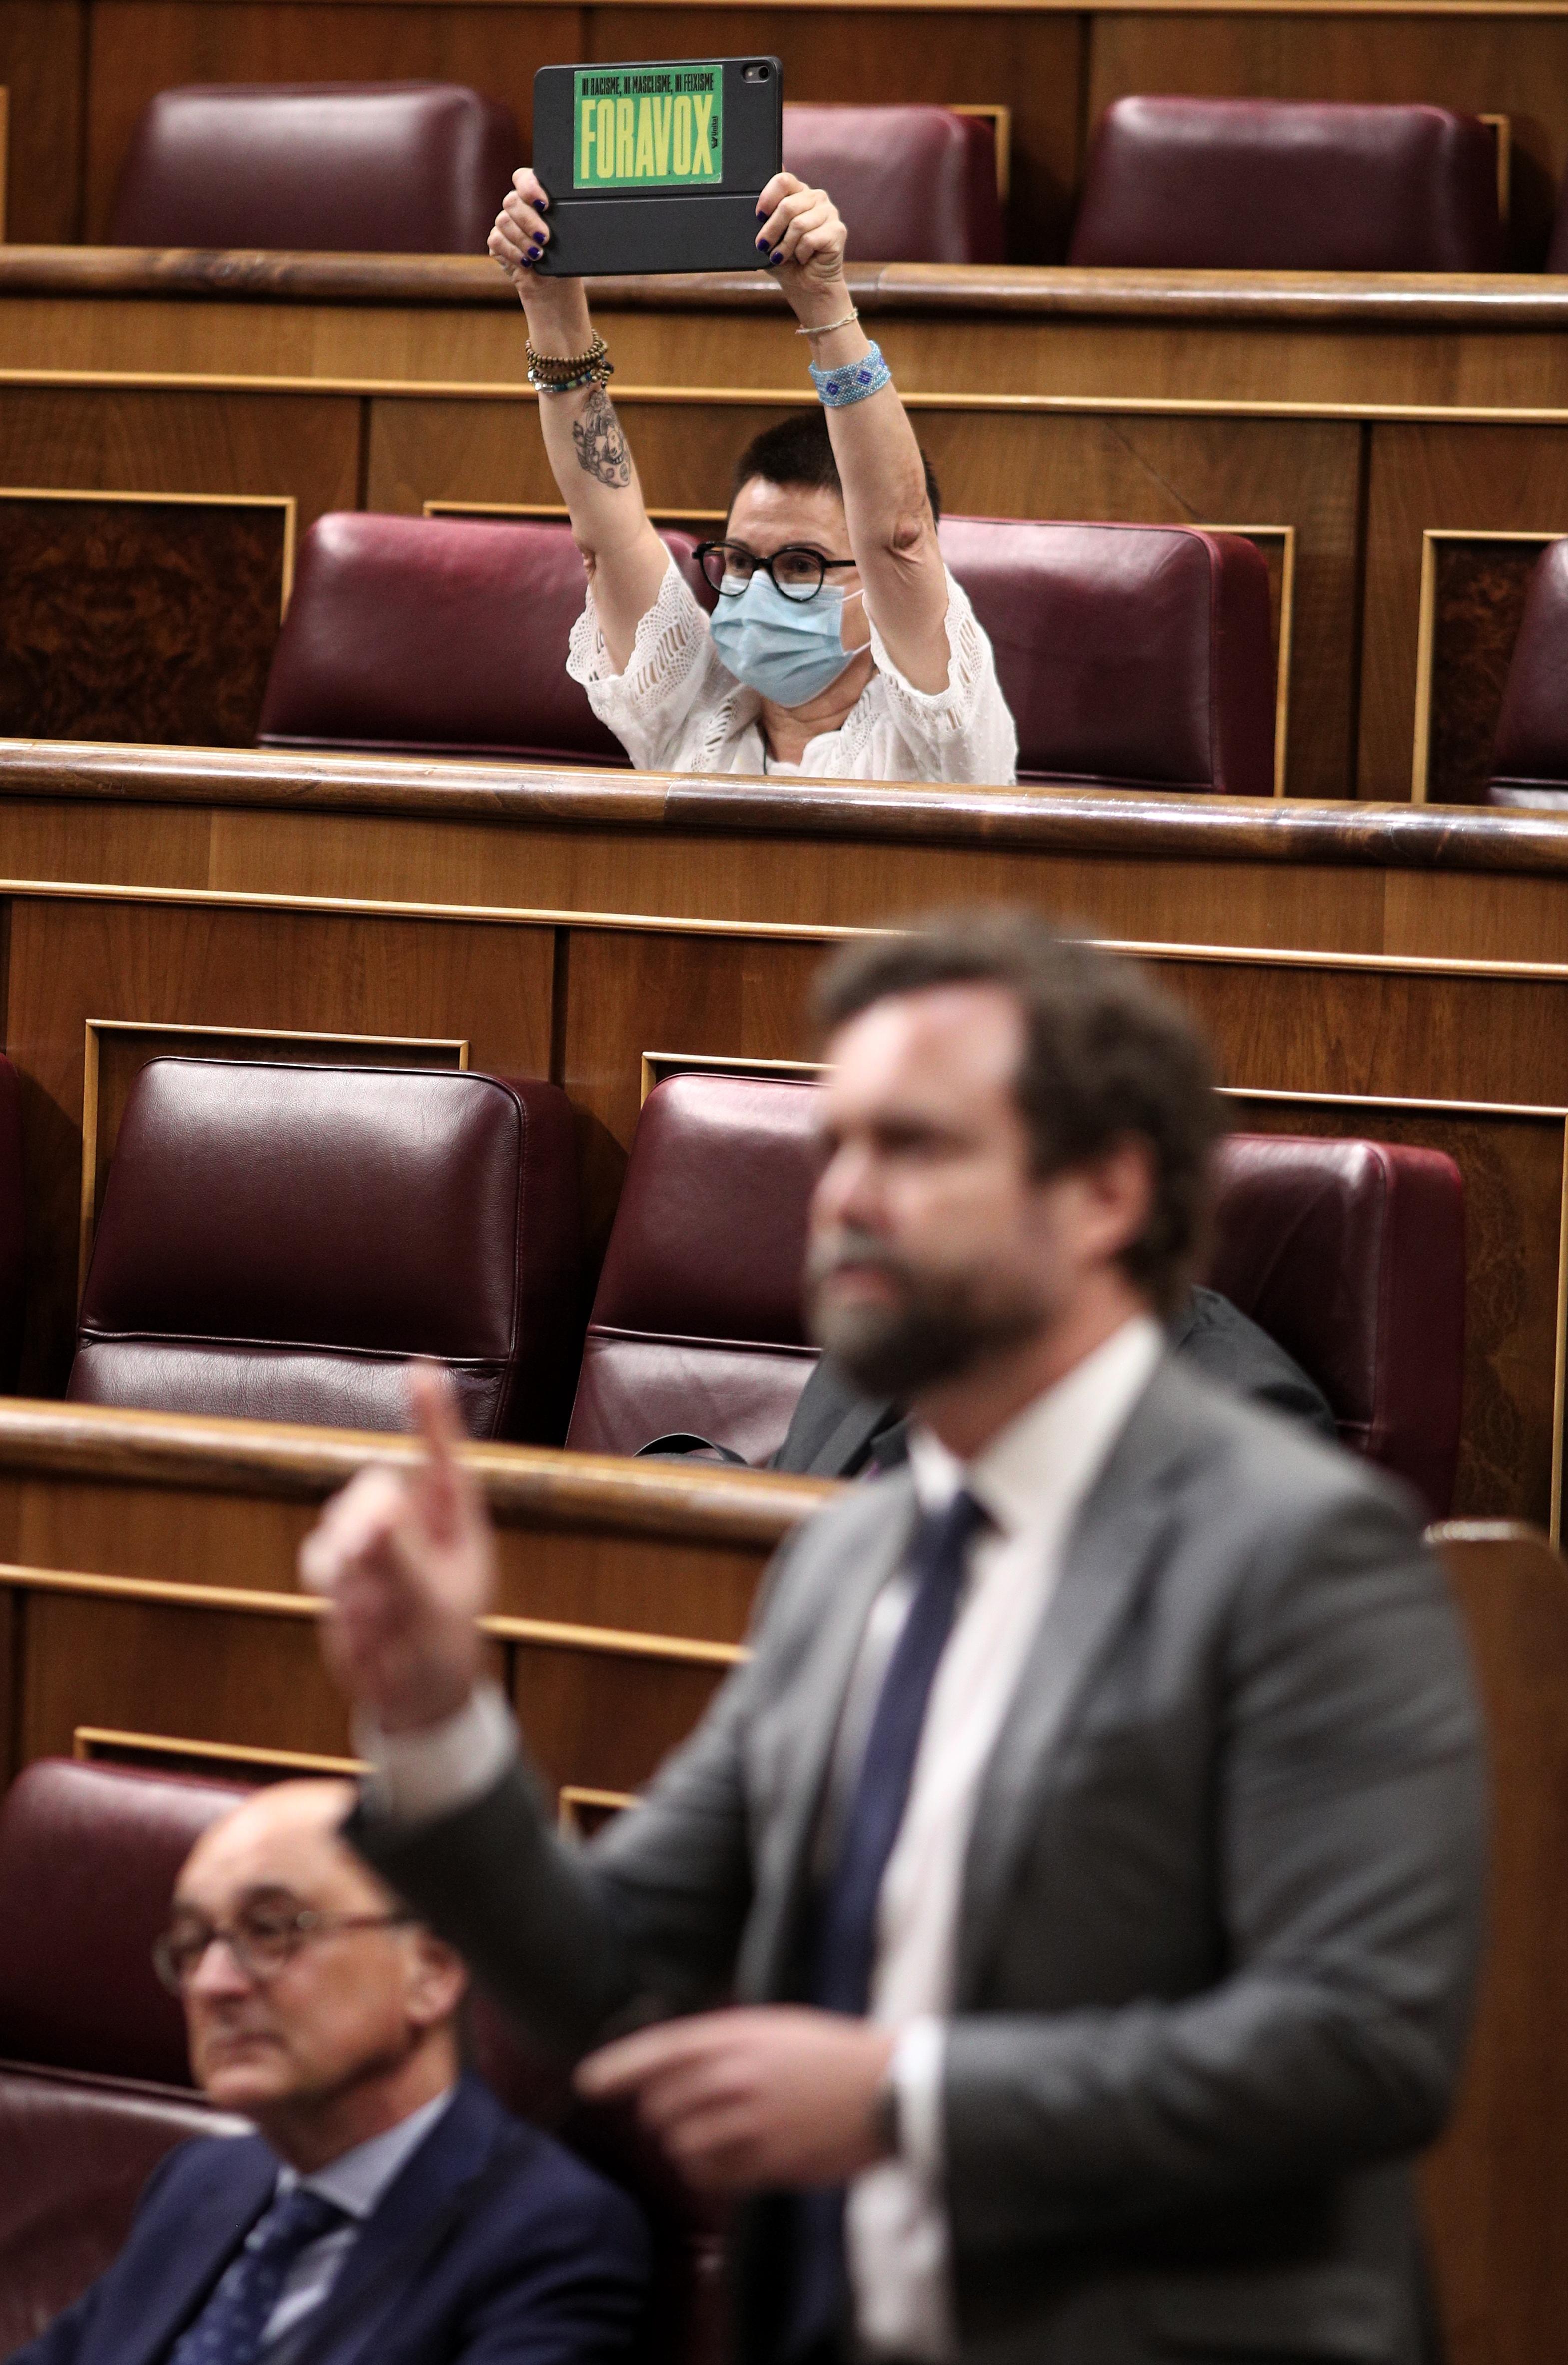 Maria Dantas (ERC) y su carte del "FORAVOX" el pasado 11 de junio en el Congreso de los Diputados. EP